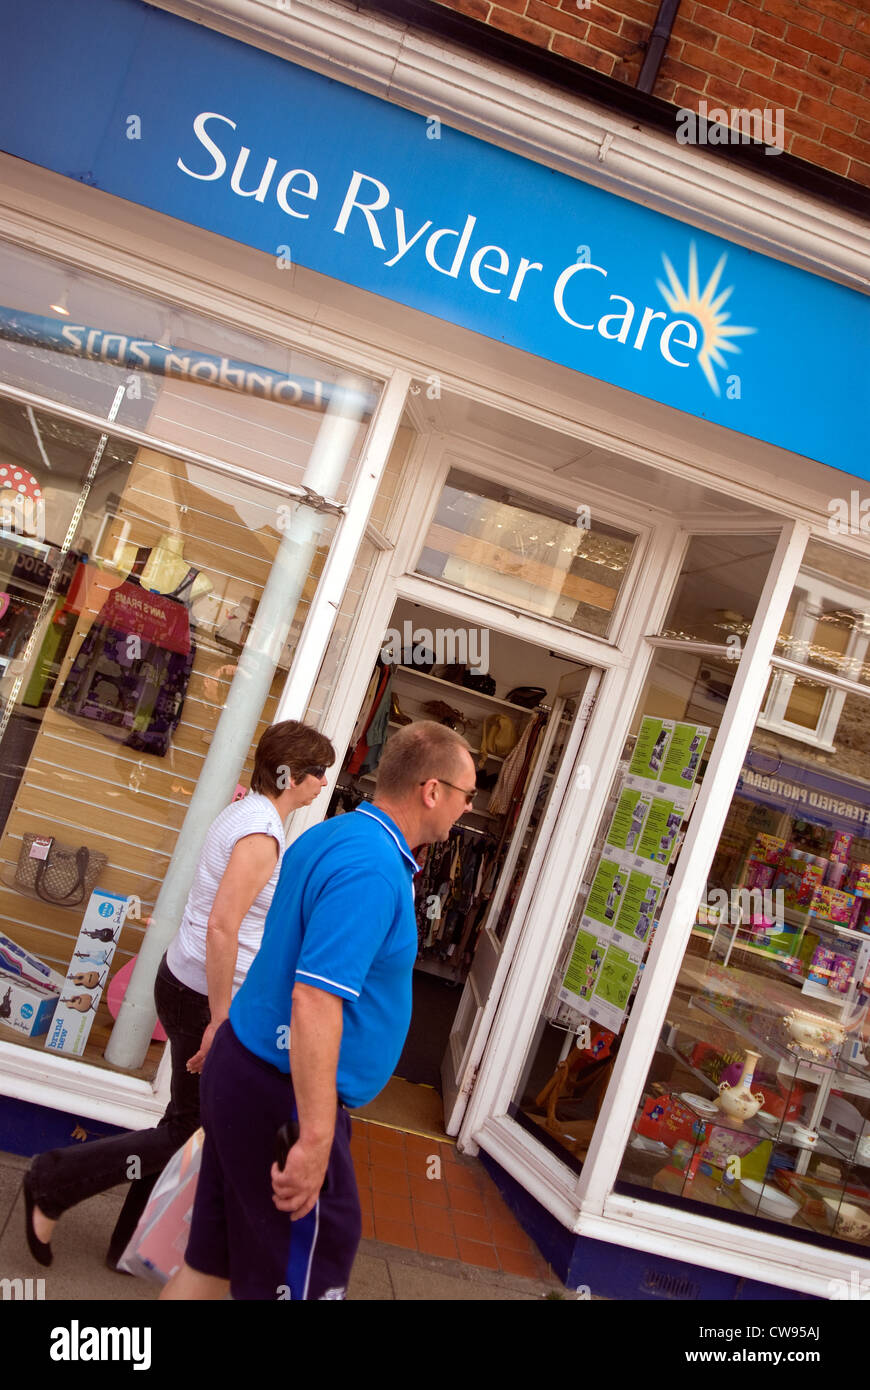 Sue Ryder Care carità shop, Petersfield, Hampshire, Regno Unito. Foto Stock